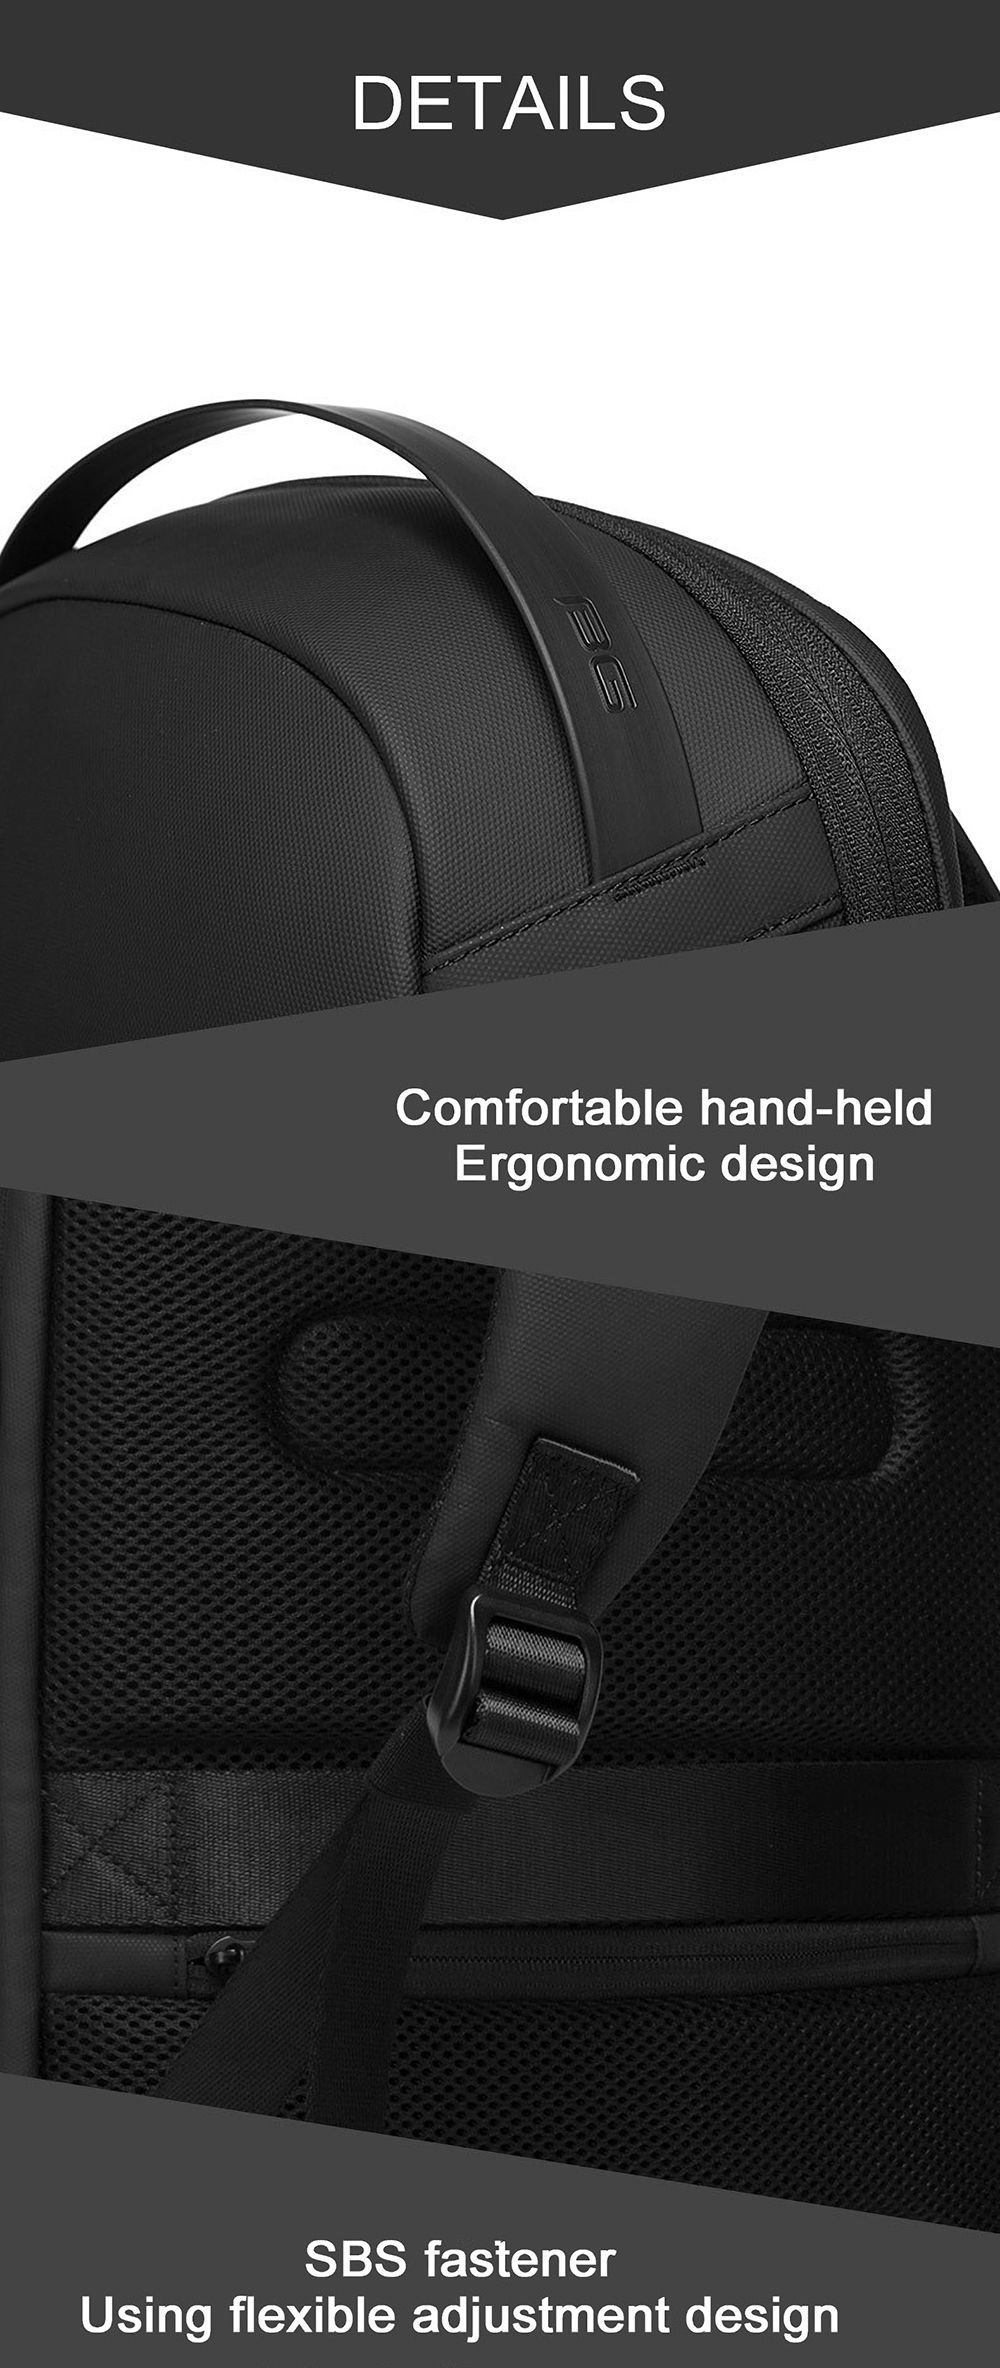 BANGE-Anti-theft-Backpack-Laptop-Bag-Shoulder-Bag-USB-Charging-Men-Business-Travel-Storage-Bag-for-1-1767118